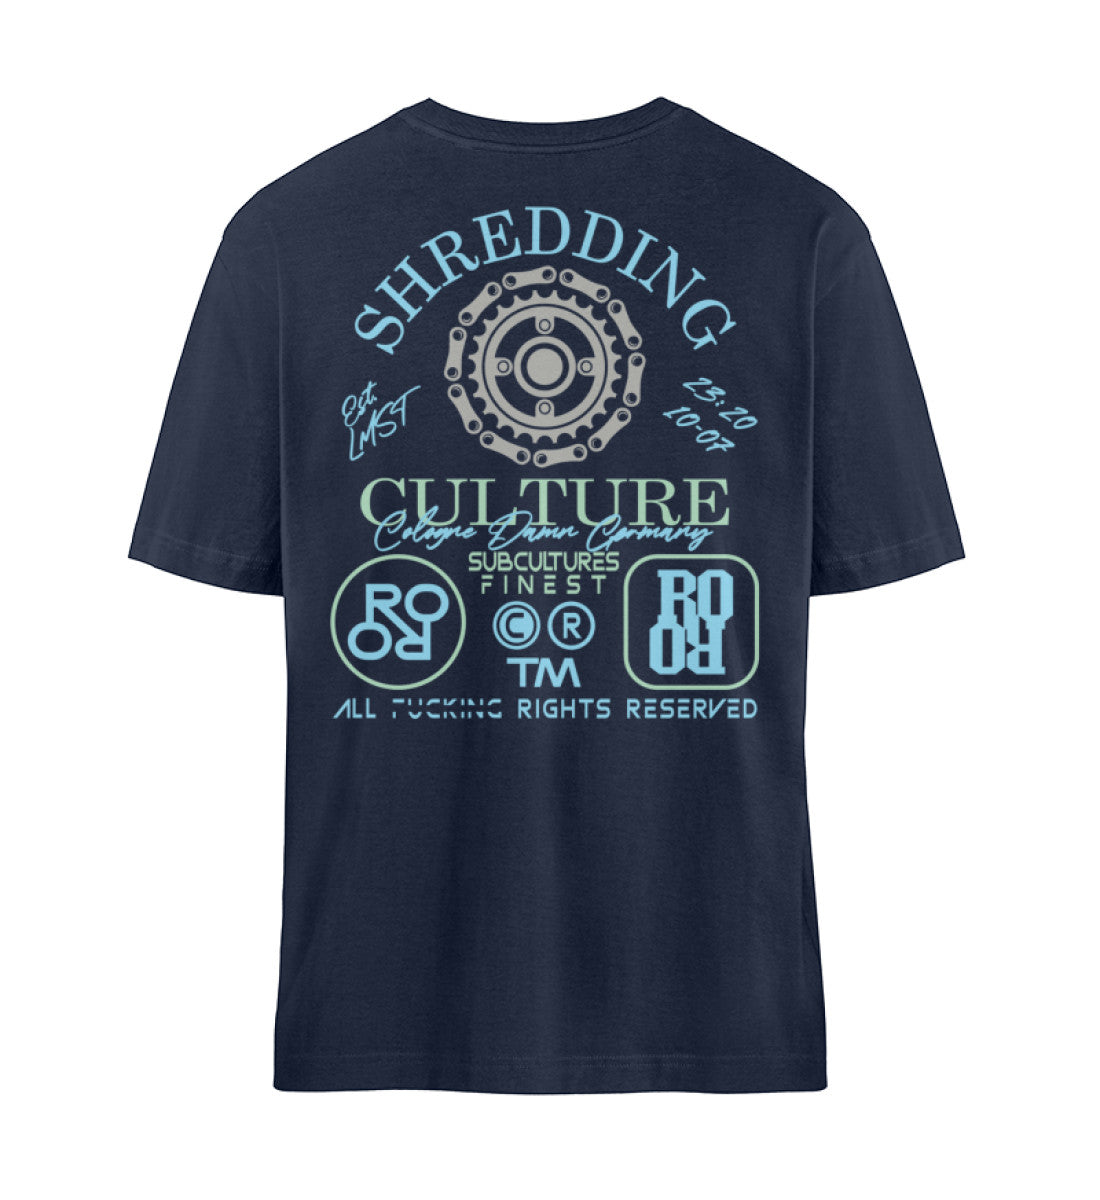 Navy Blue T-Shirt Unisex Relaxed Fit für Damen und Herren bedruckt mit dem Design der Roger Rockawoo Kollektion Mountainbike Shredding Culture Community